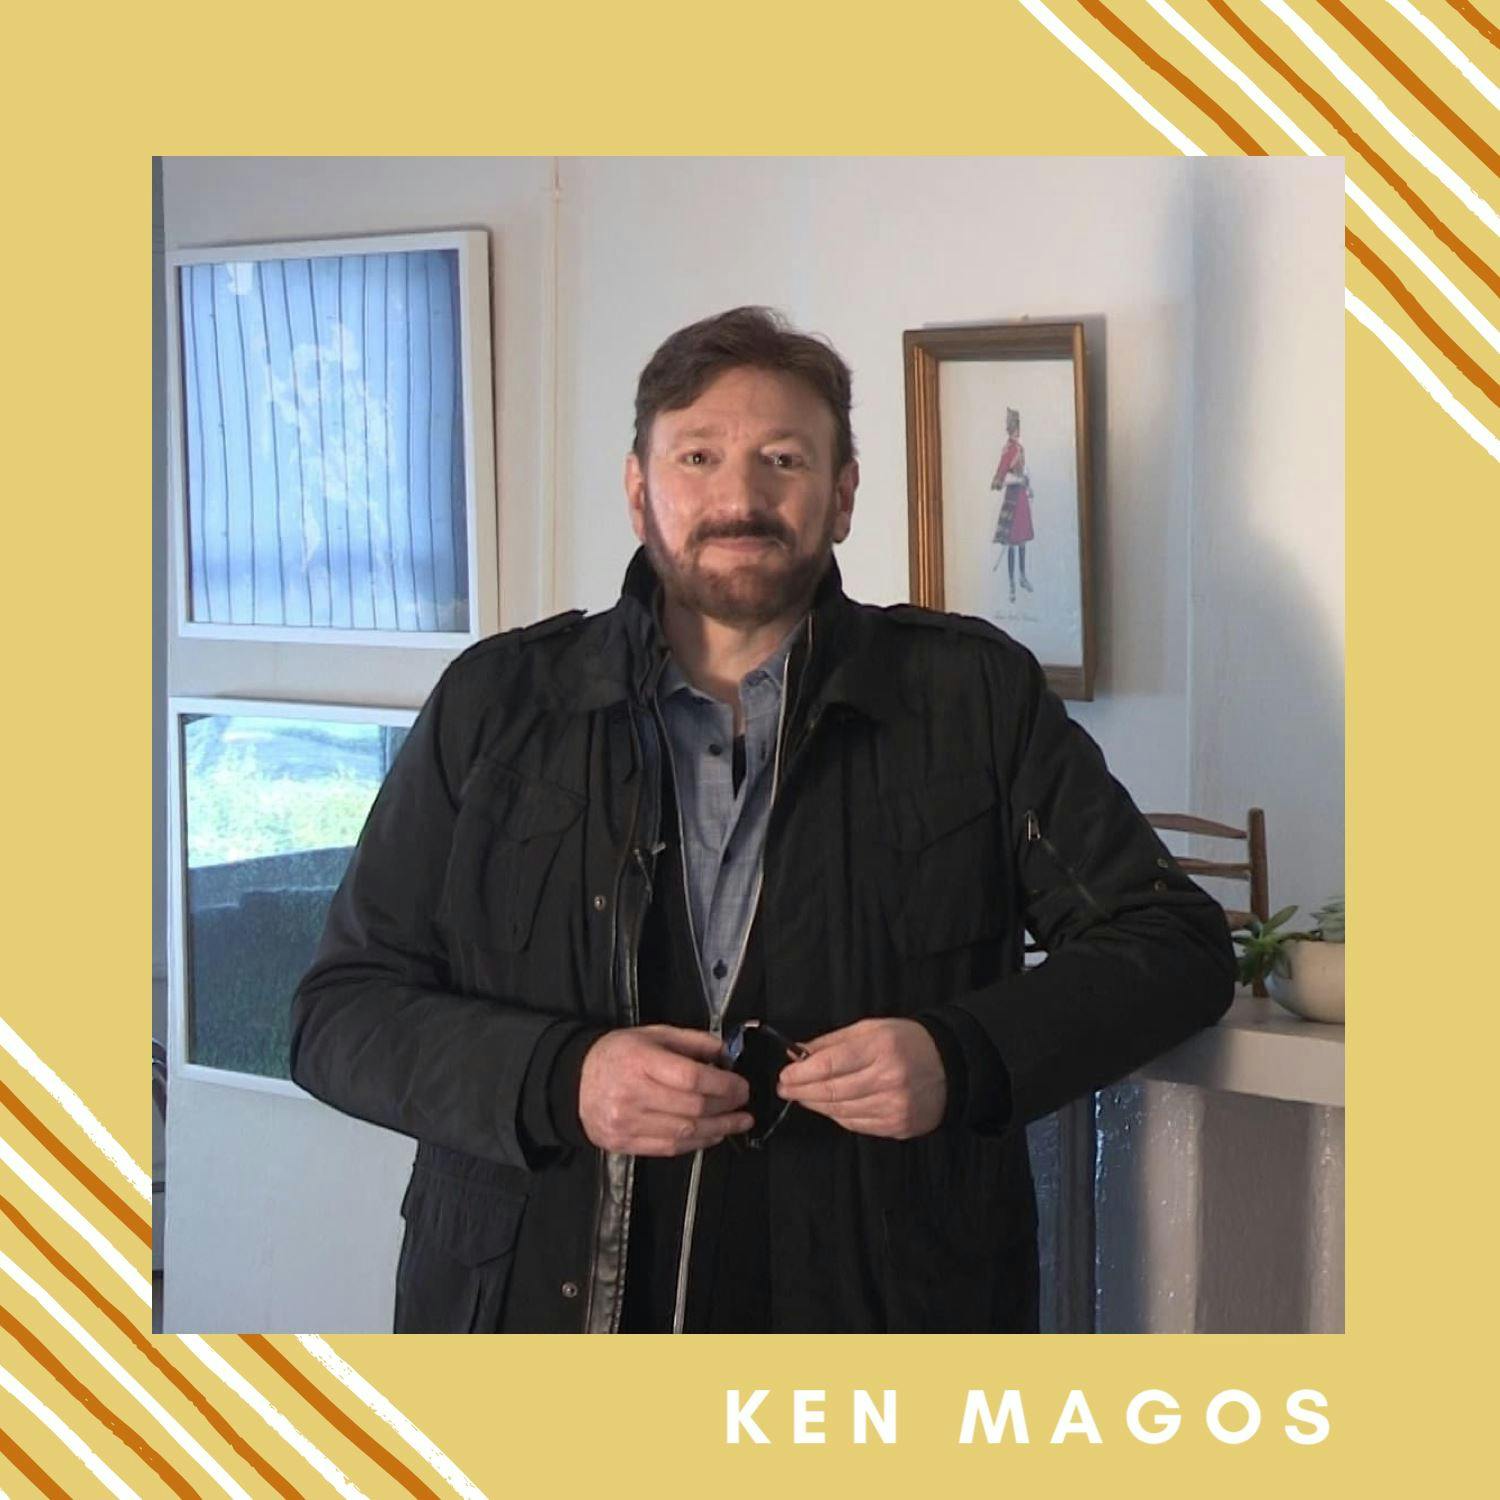 Episode 9- Ken Magos paves his own way